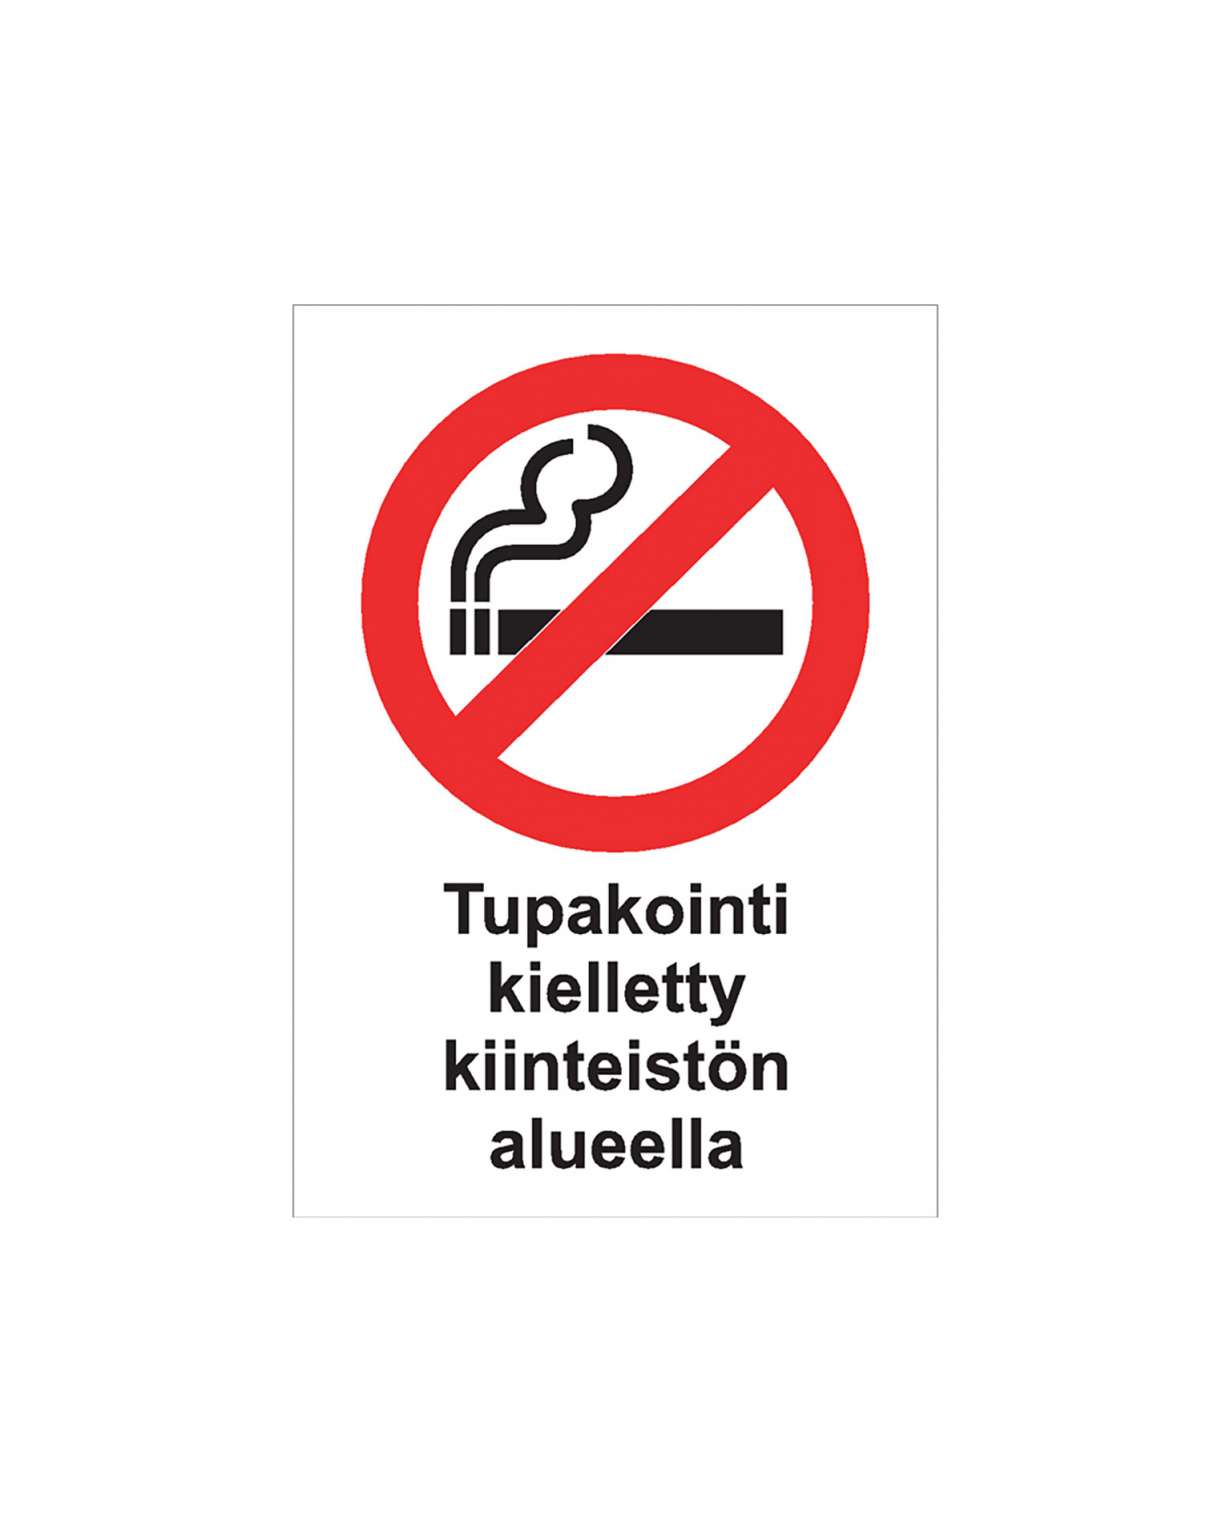 Tupakointi kielletty kiinteistön alueella, Ibond alumiini, 300x400 mm